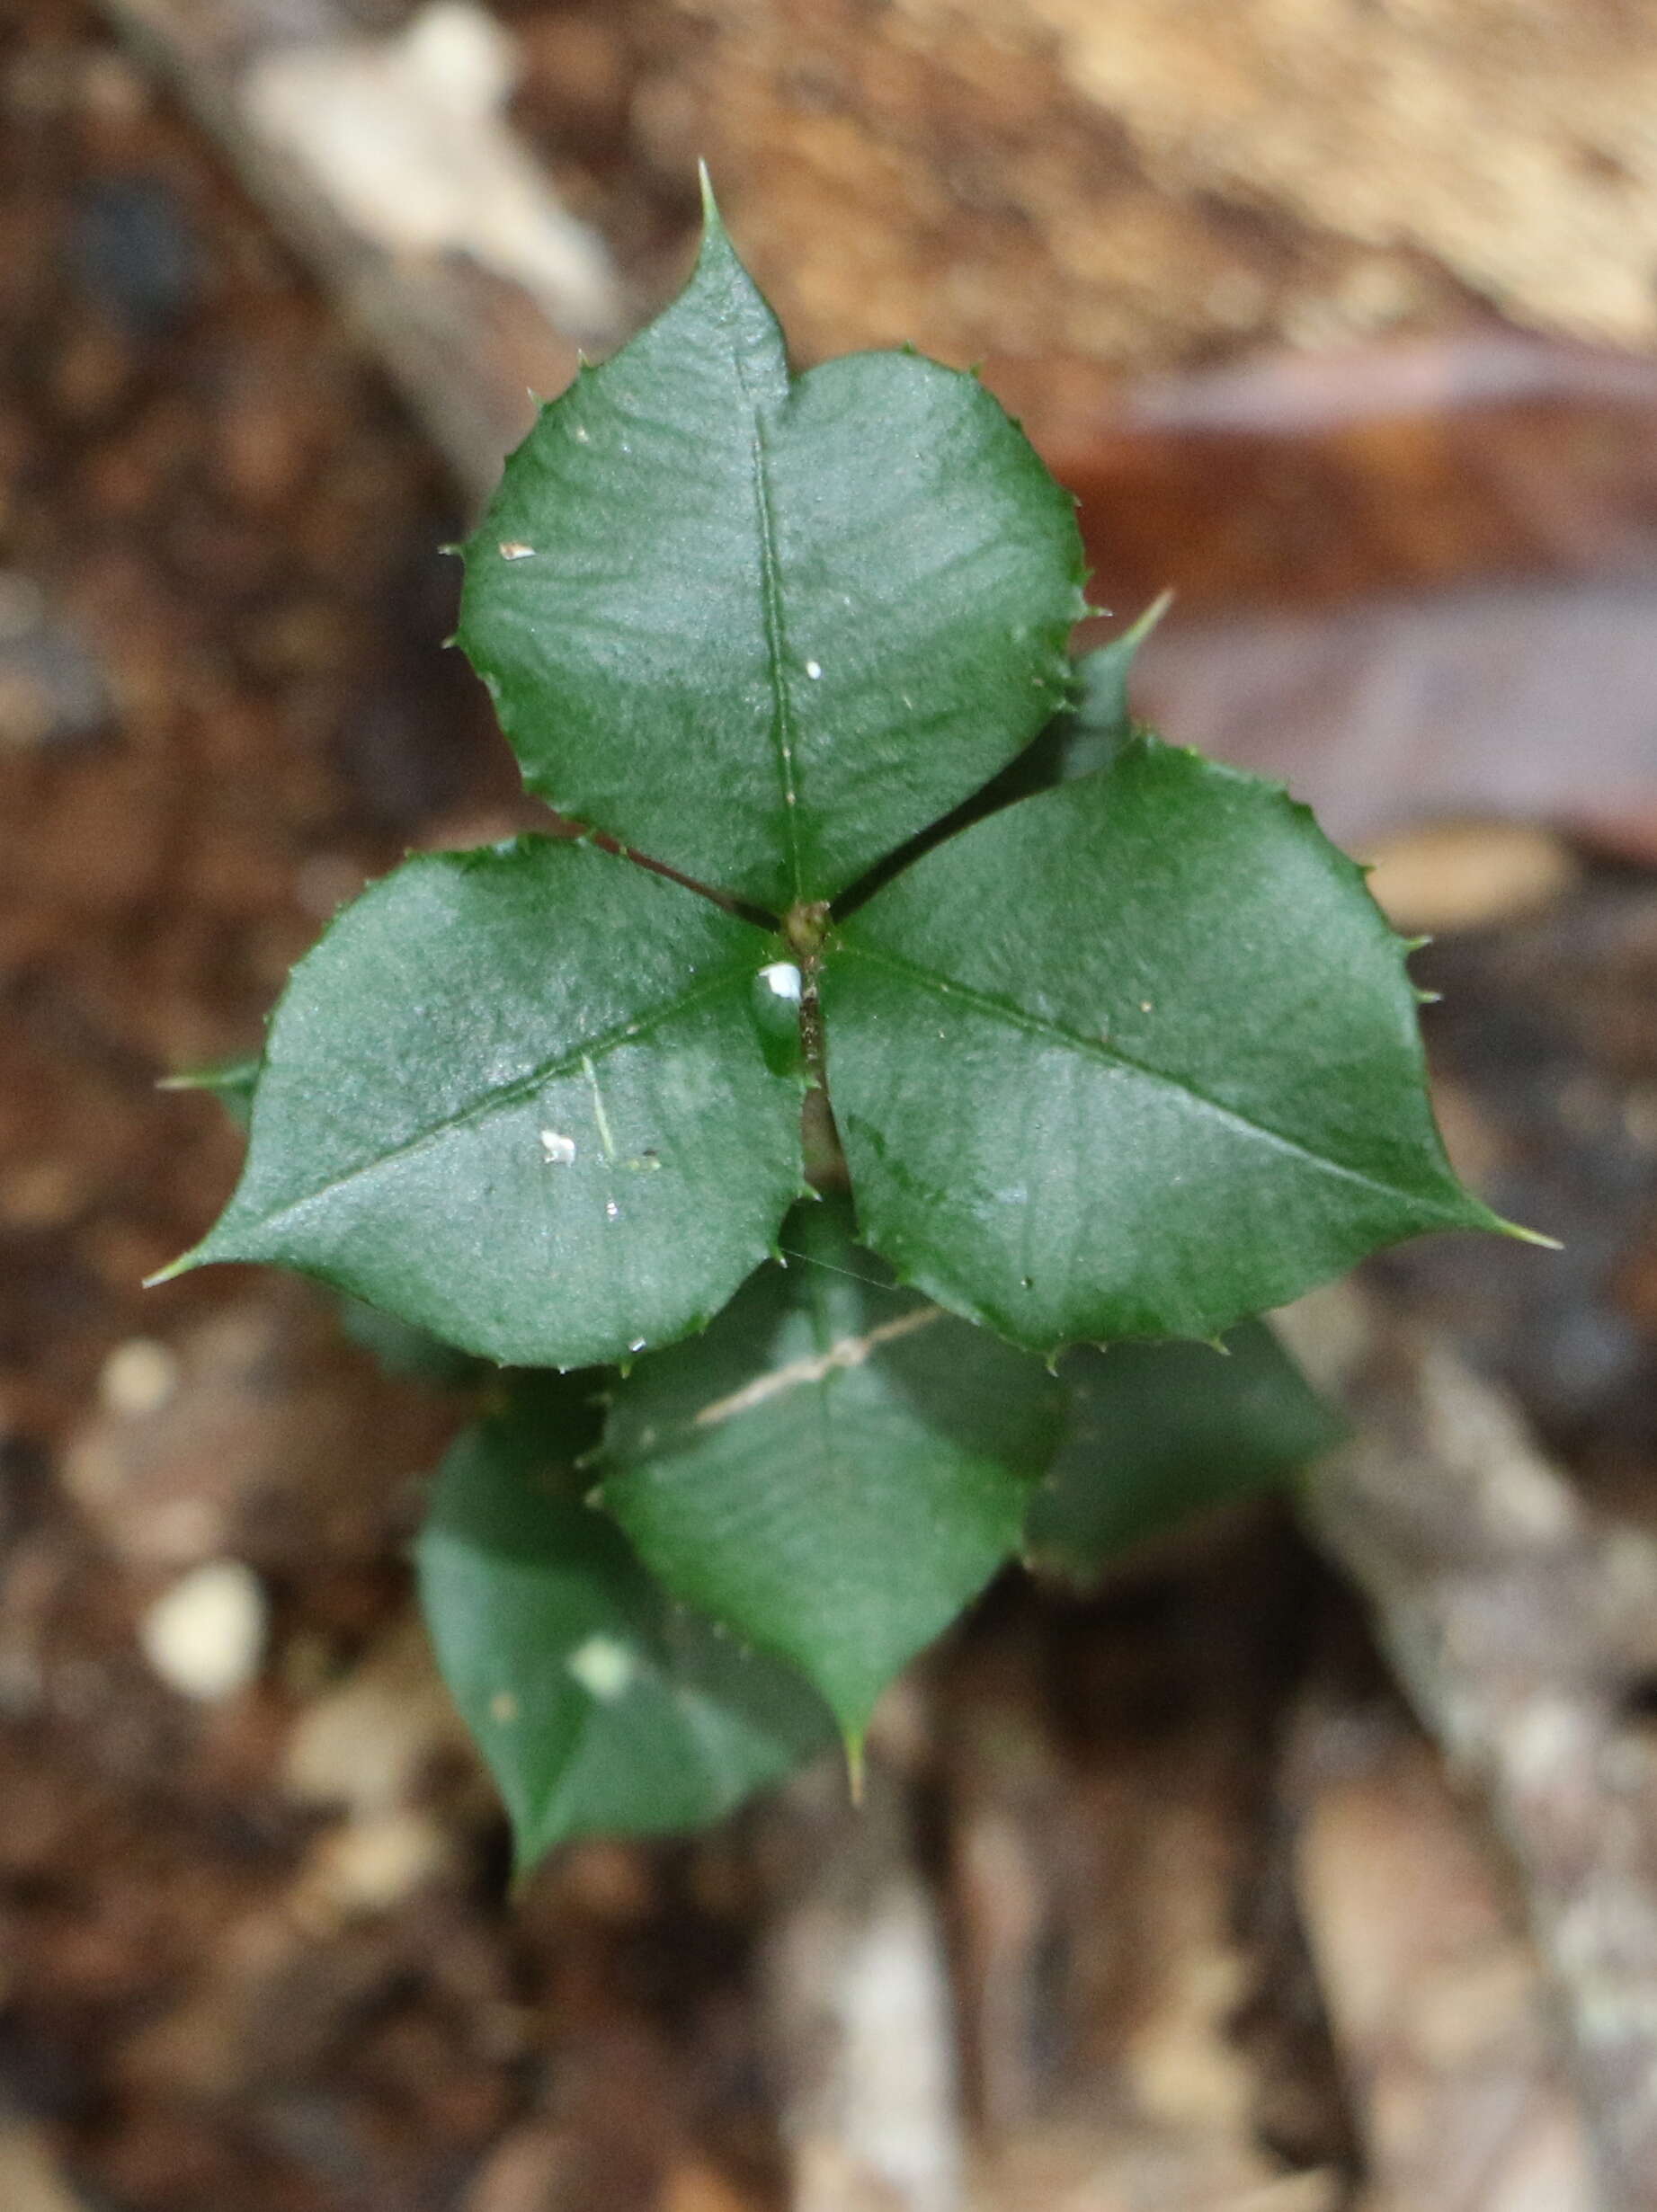 Image of Alyxia ruscifolia R. Br.